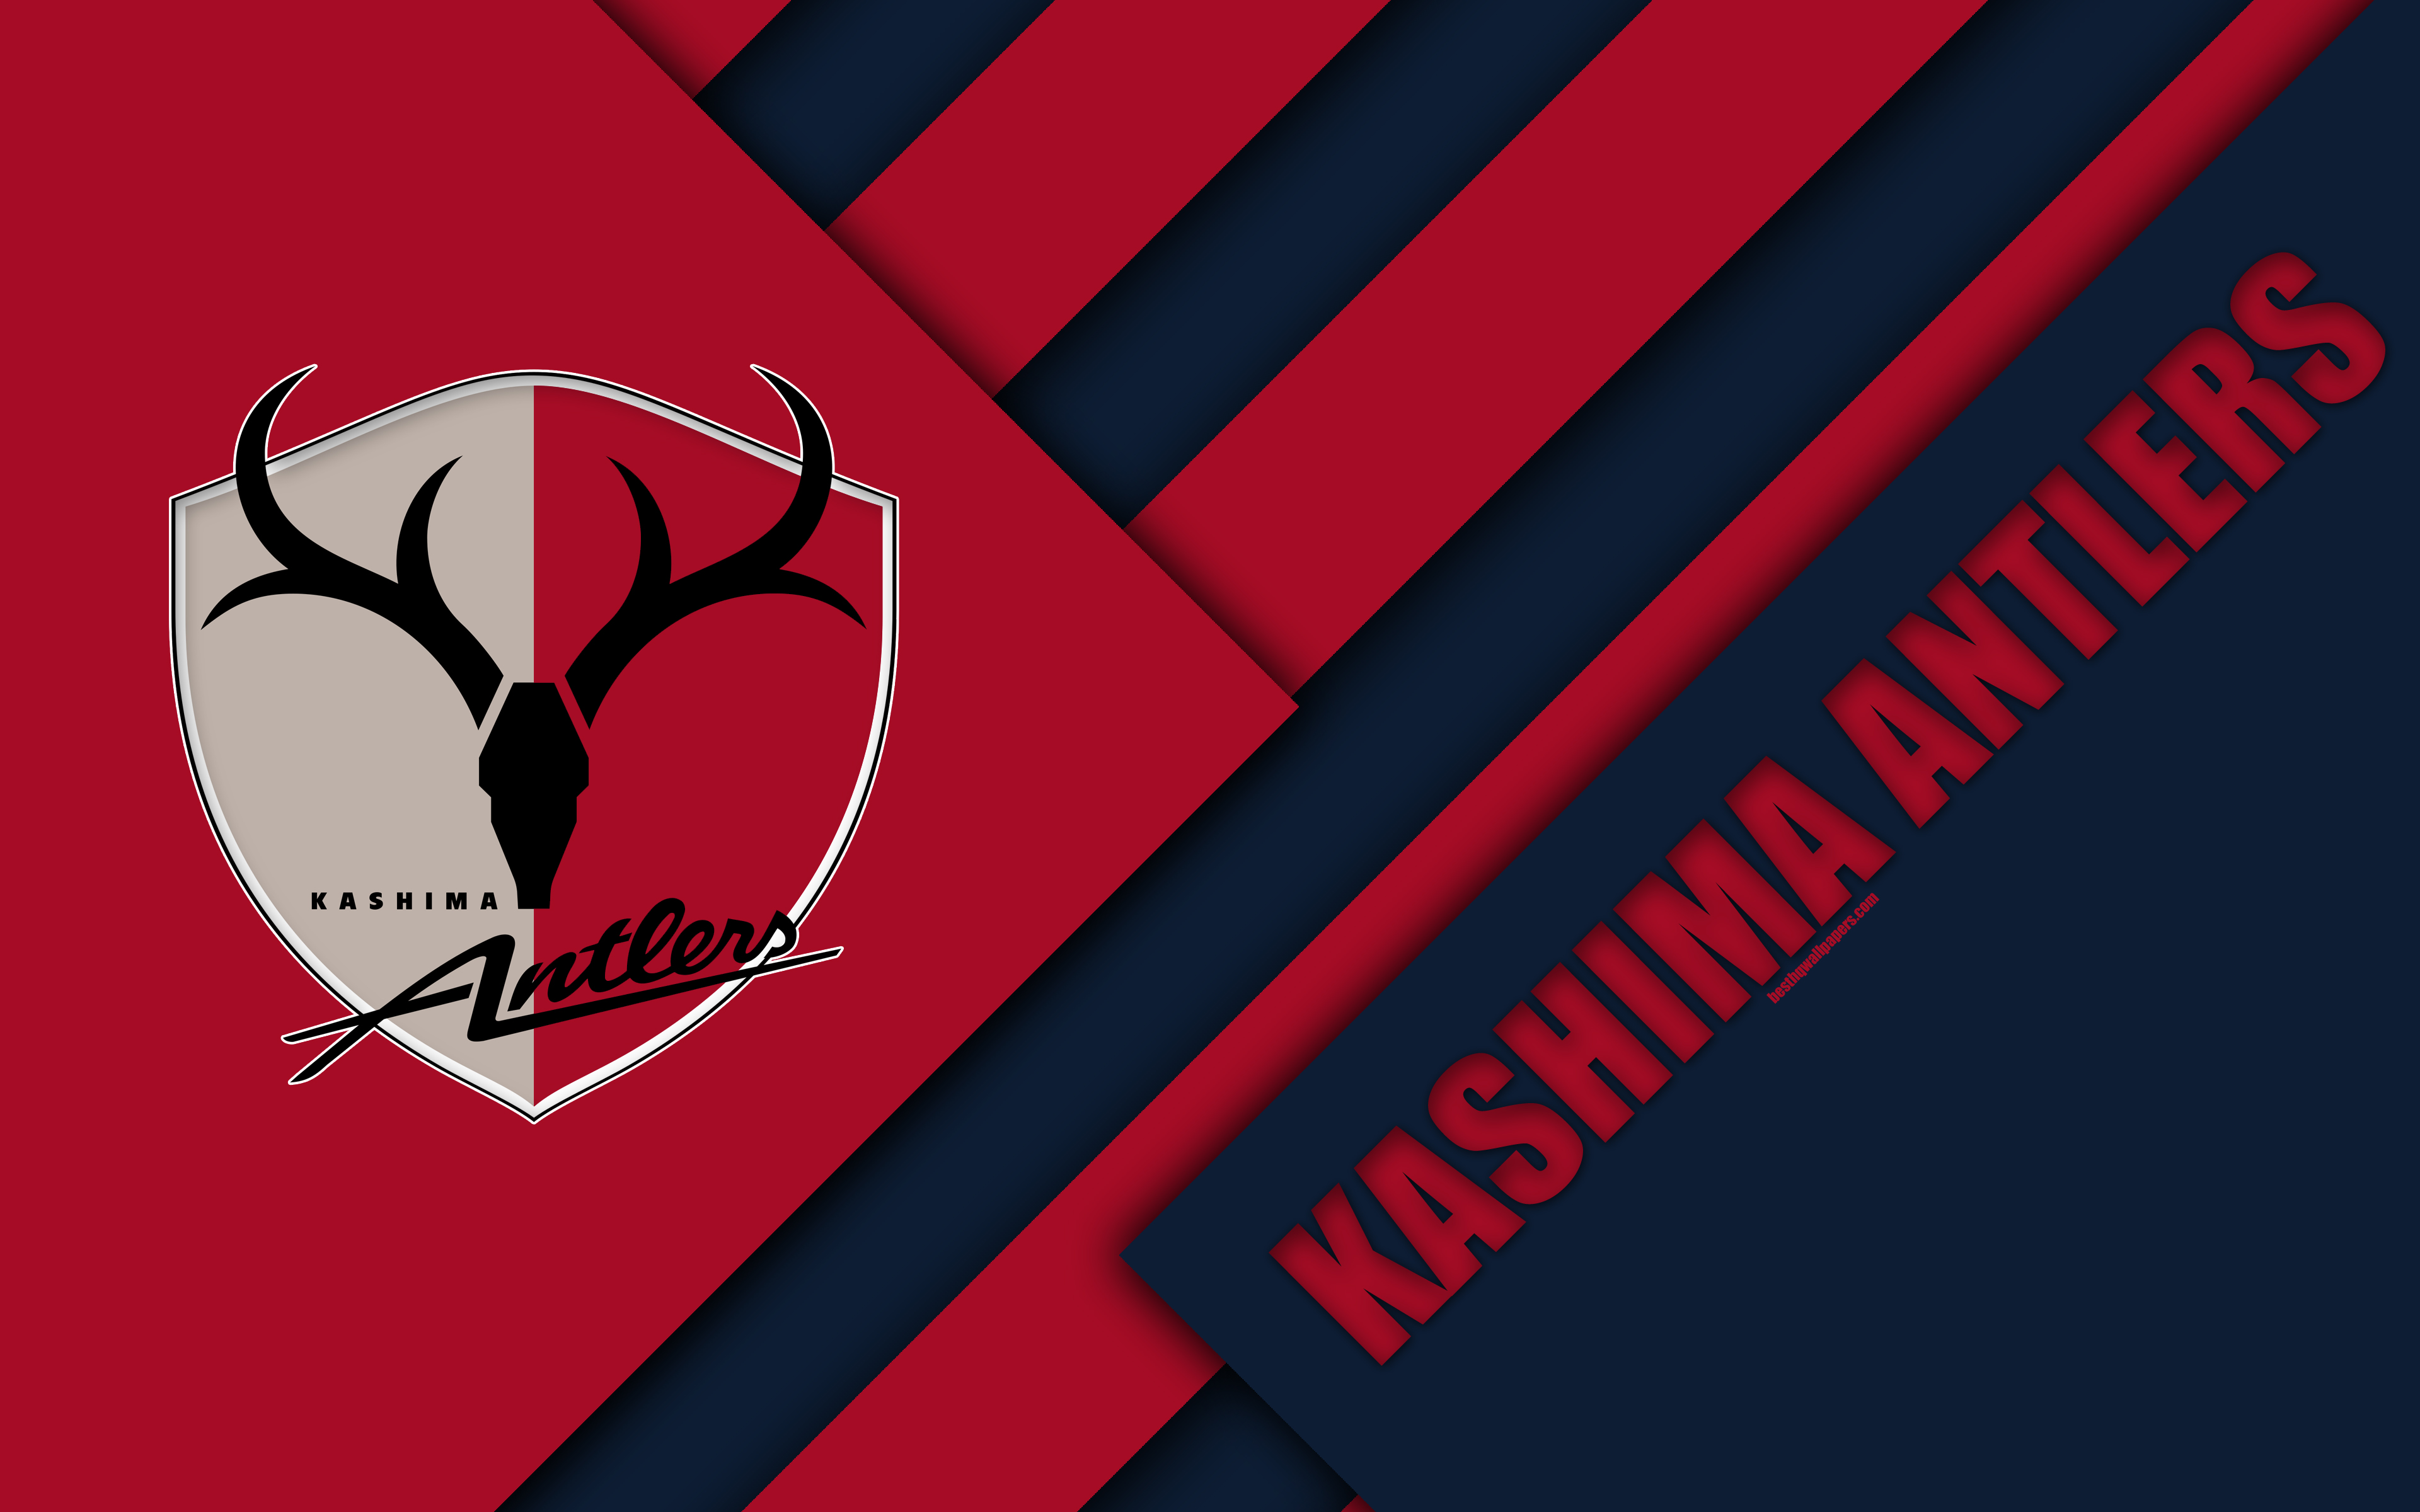 Download wallpaper Kashima Antlers FC, 4k, material design